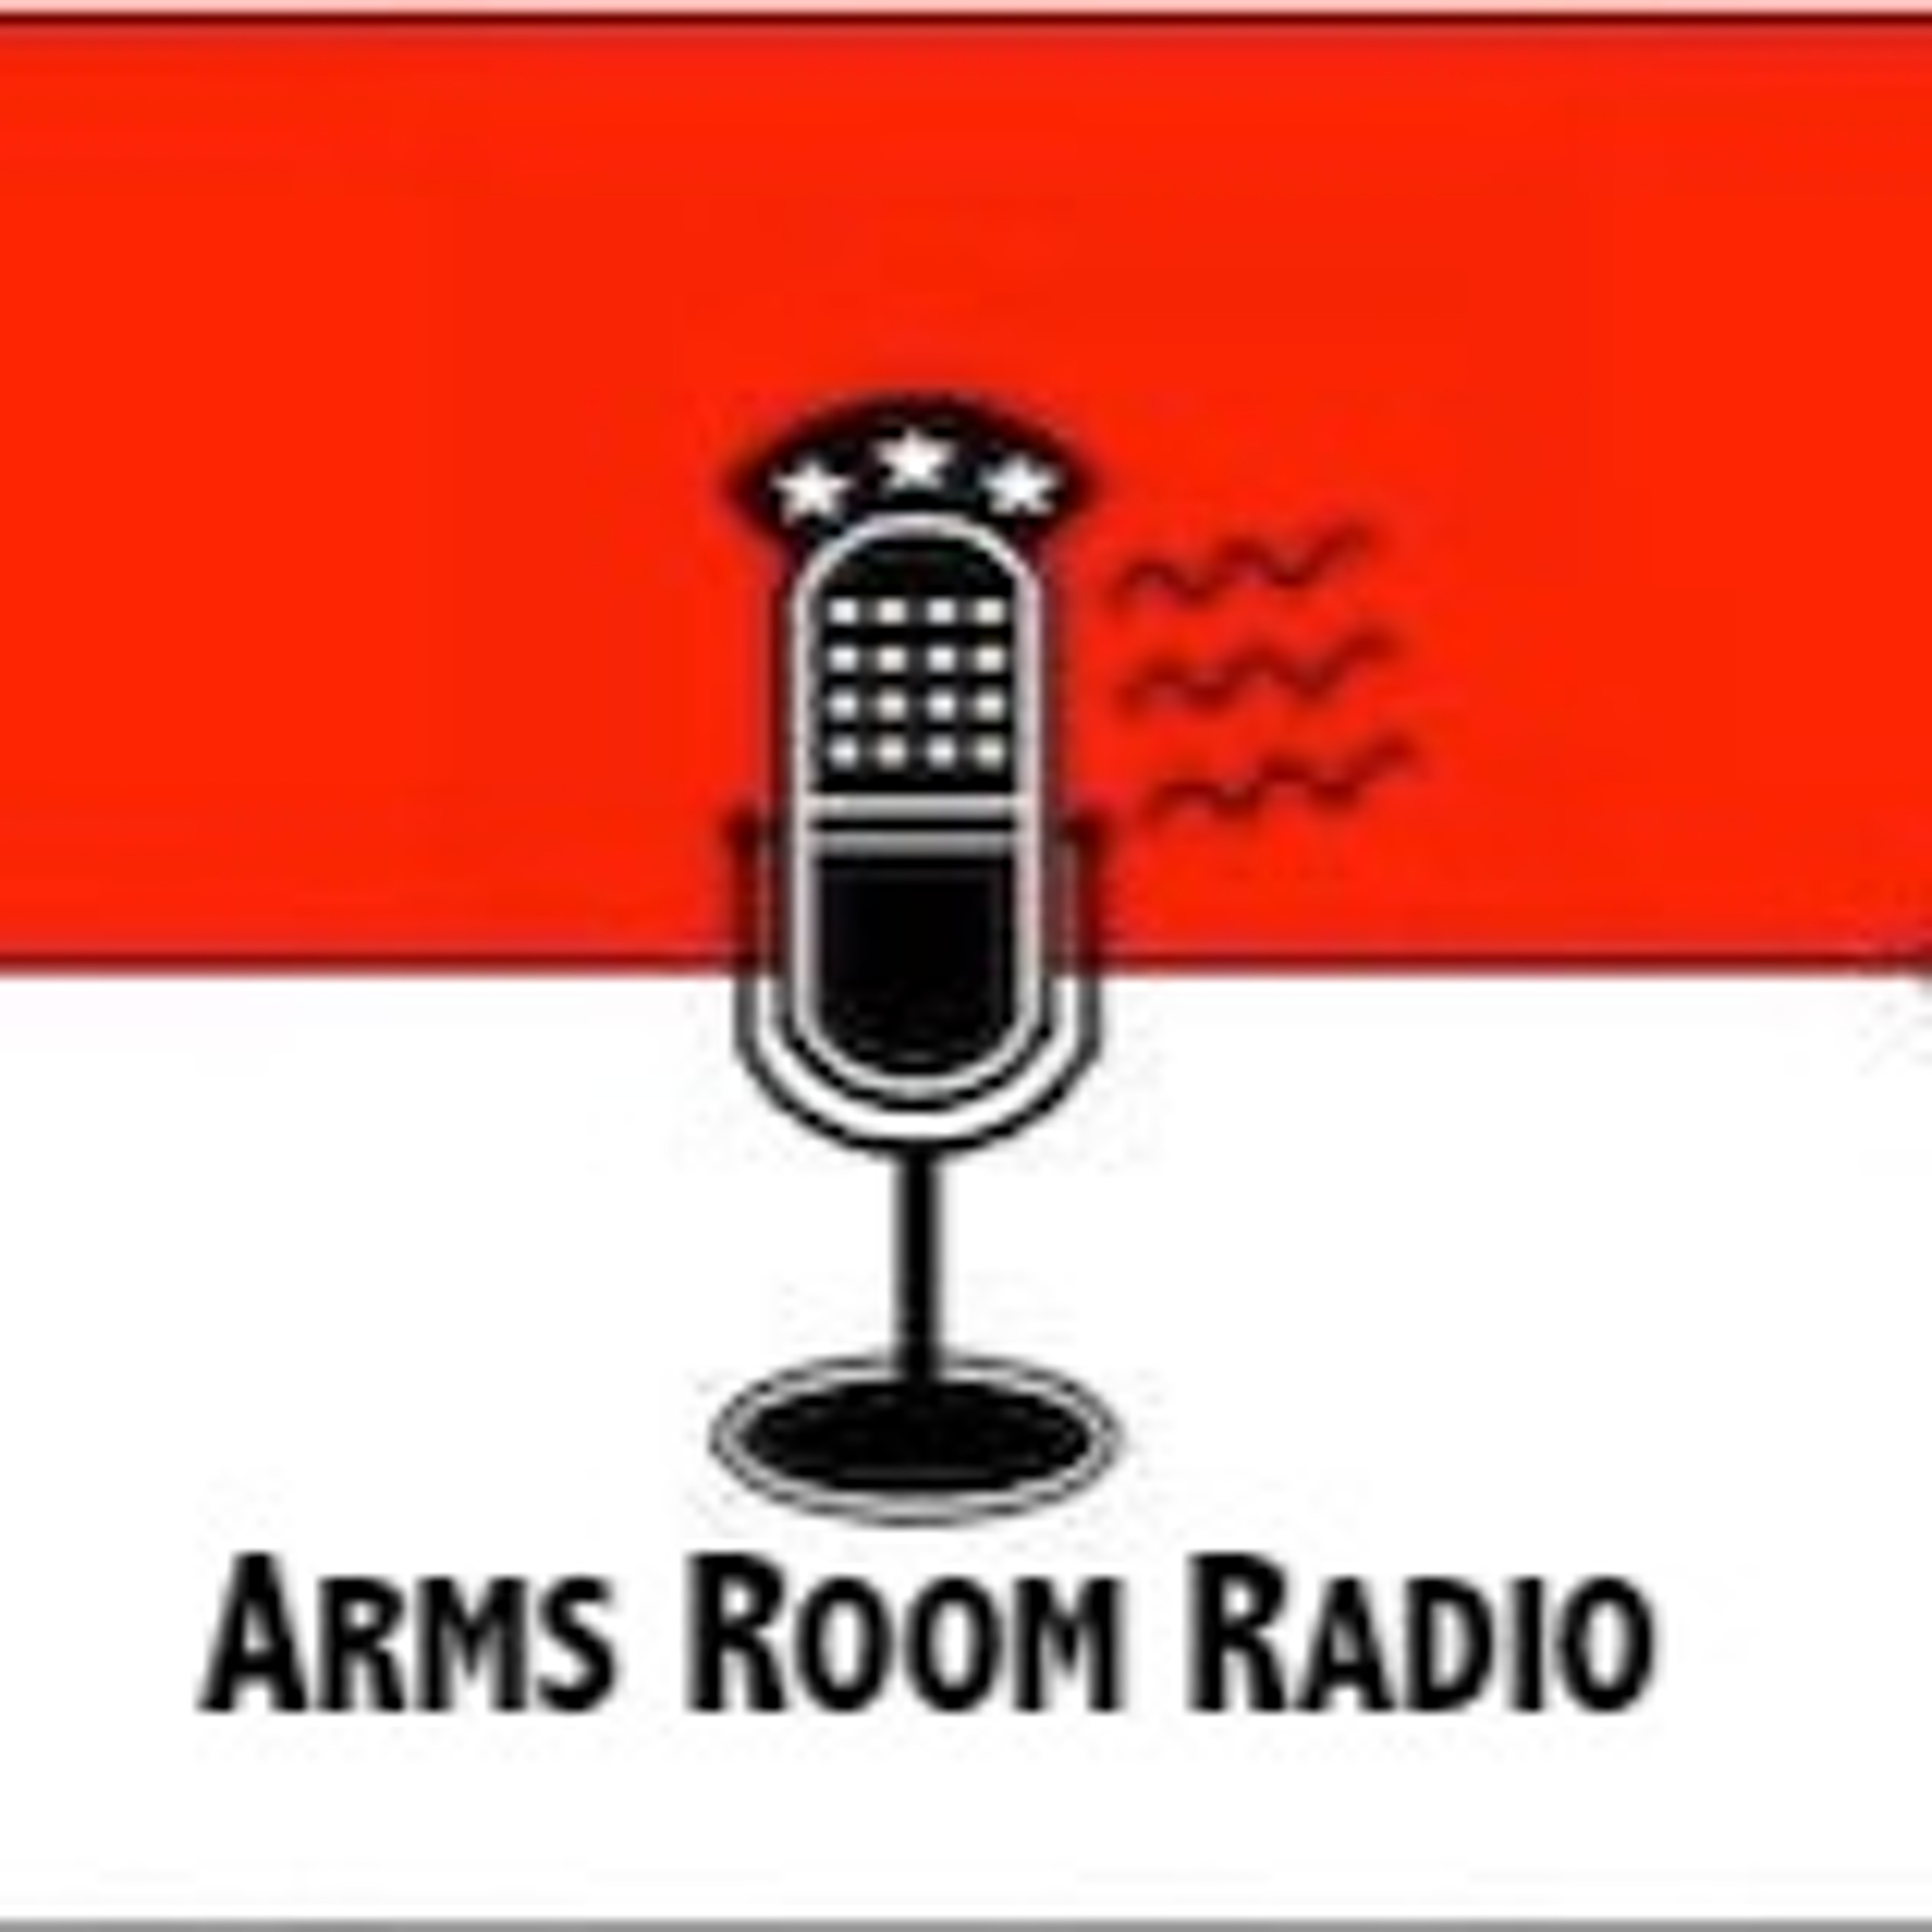 ArmsRoomRadio 01.05.19 Gun safety and donuts